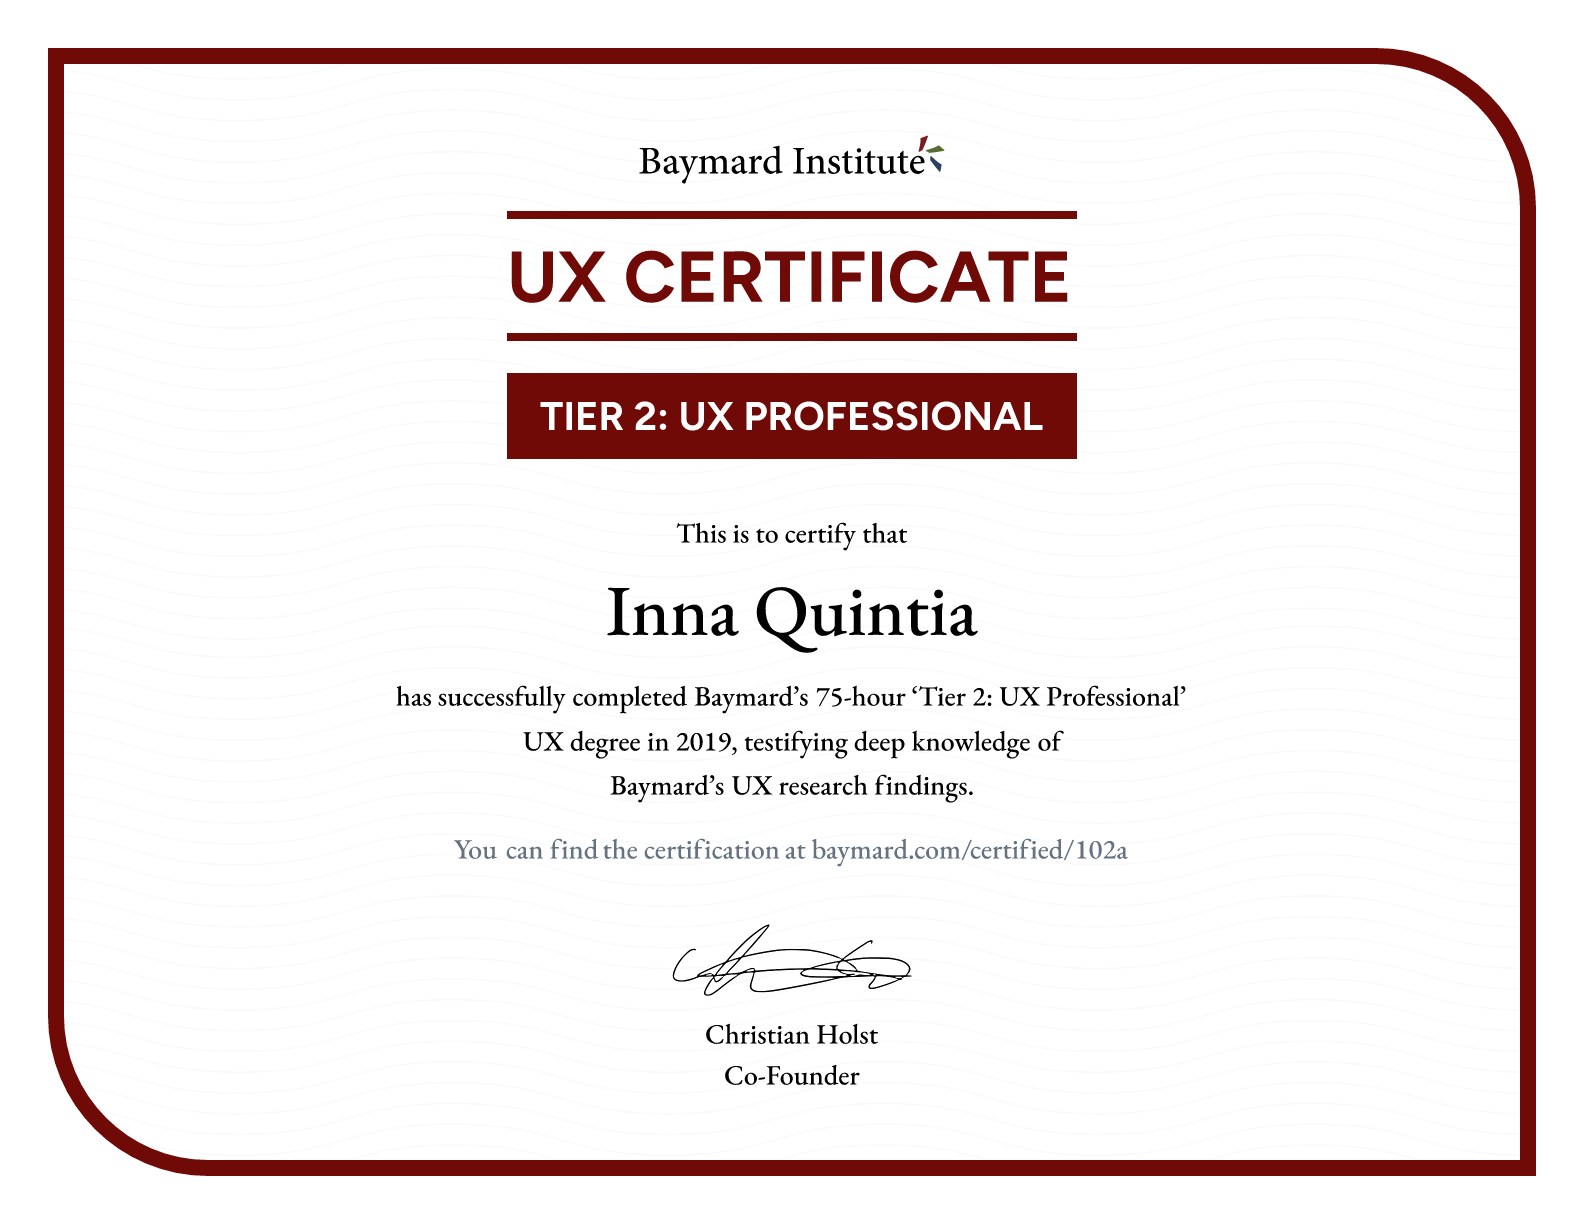 Inna Quintia’s certificate